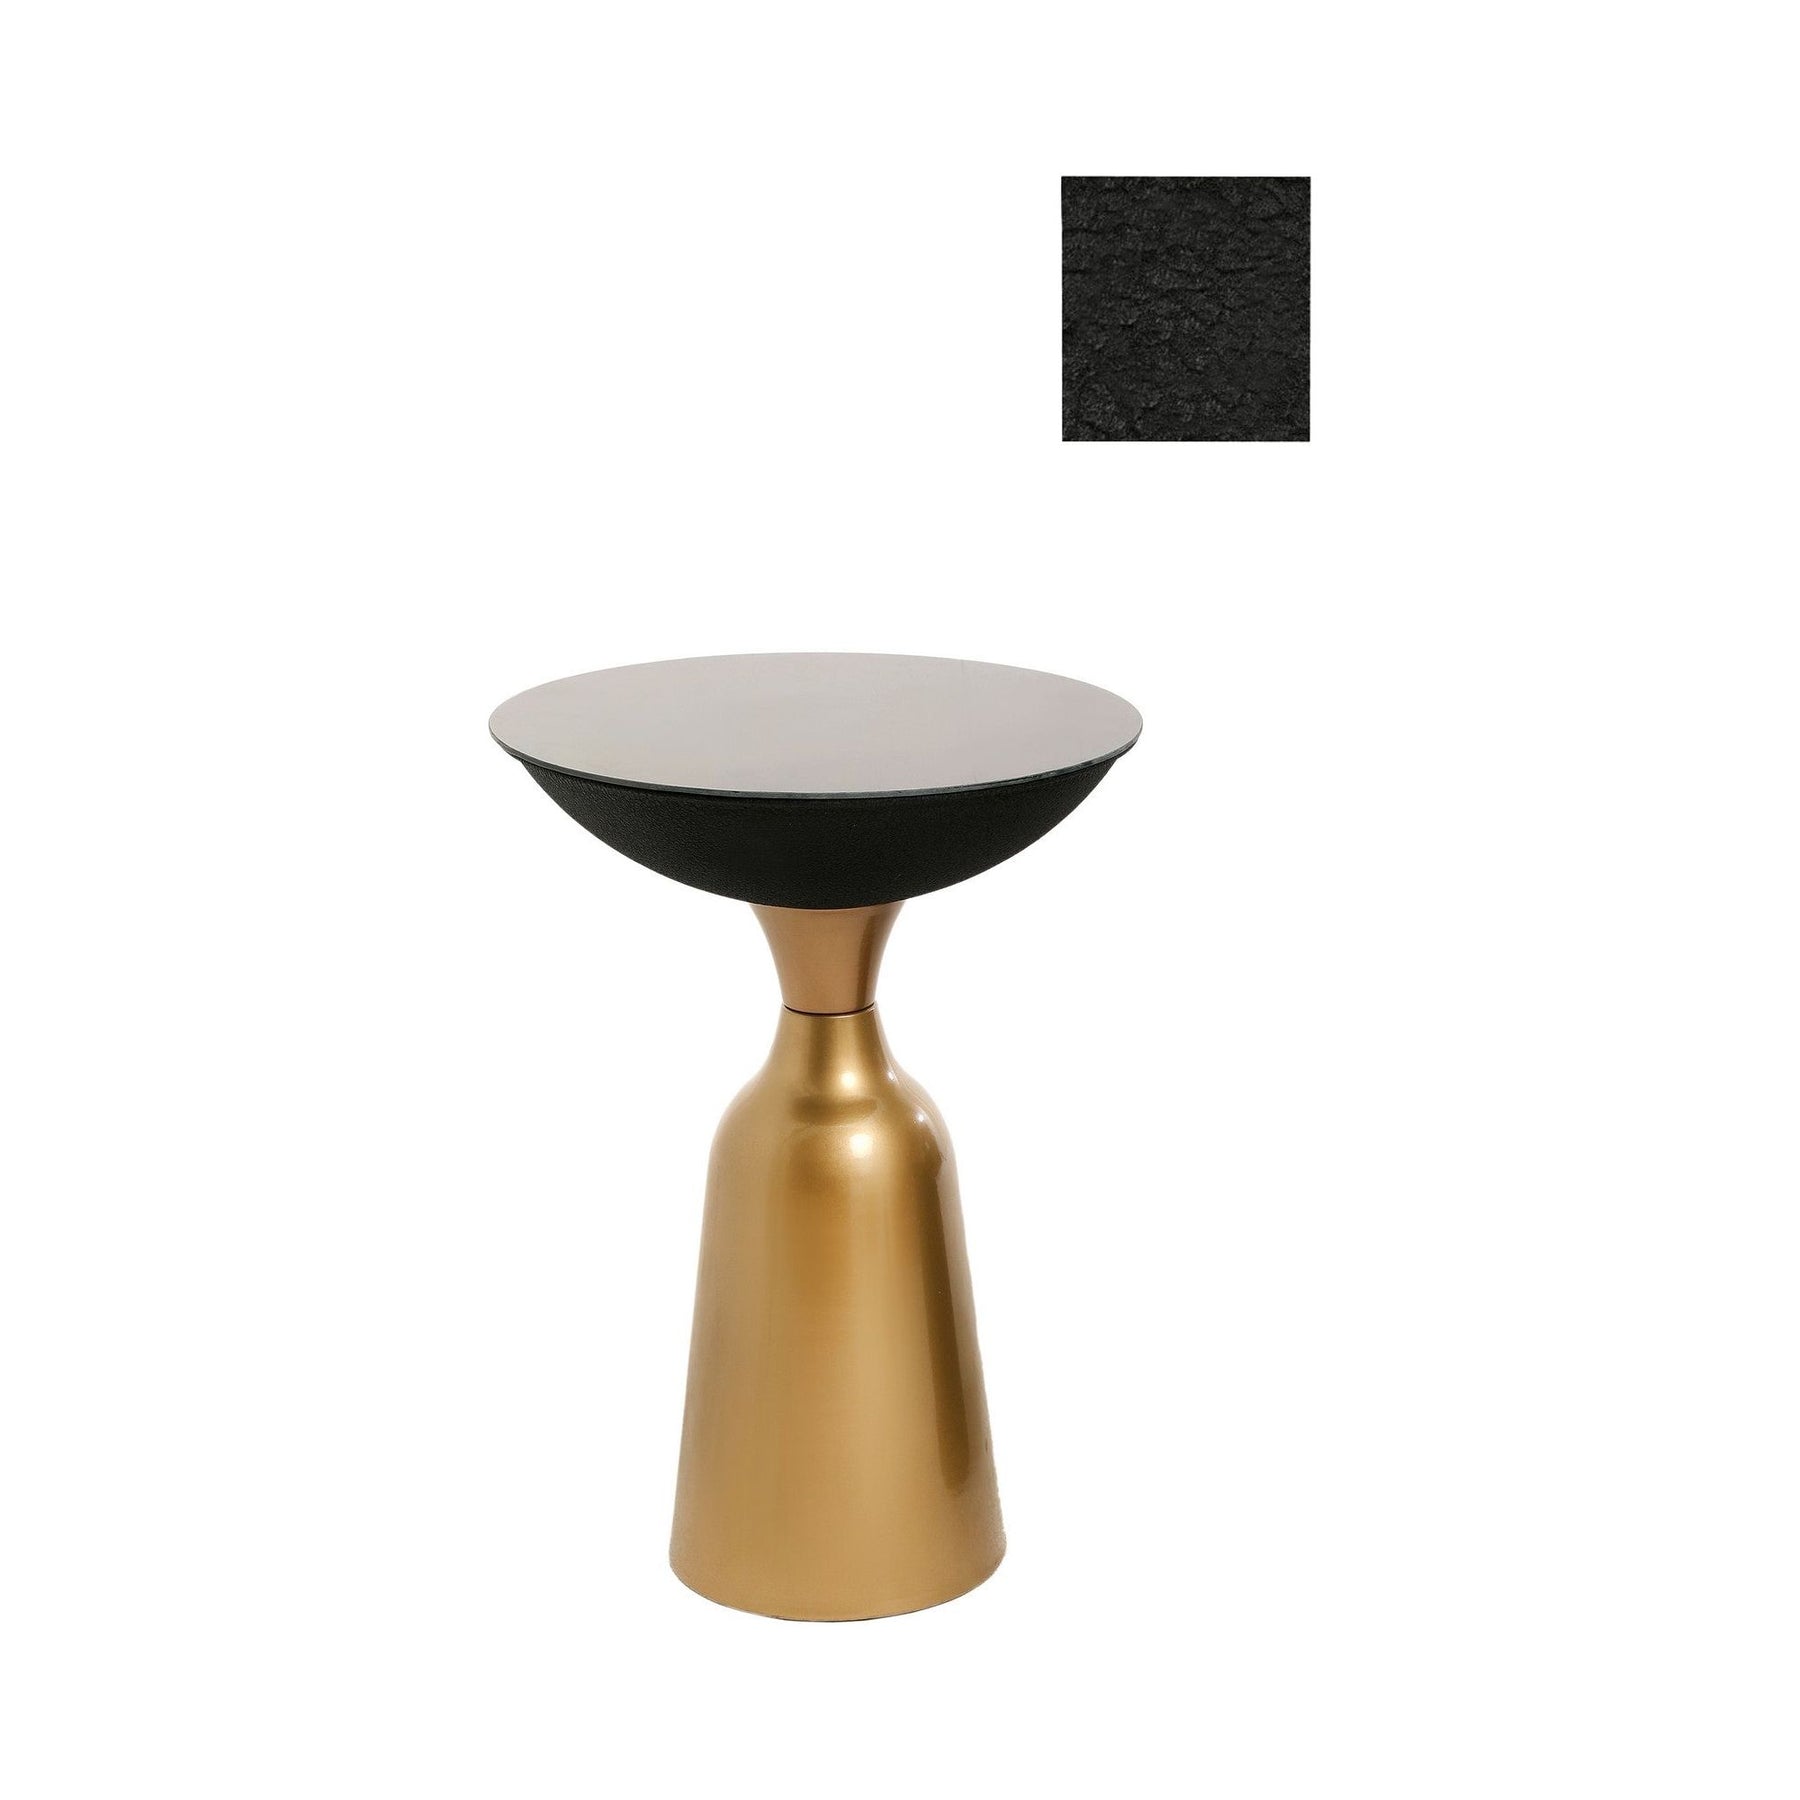 Masuta cafea 1008-11, auriu/negru, metal, 42x42x56 cm